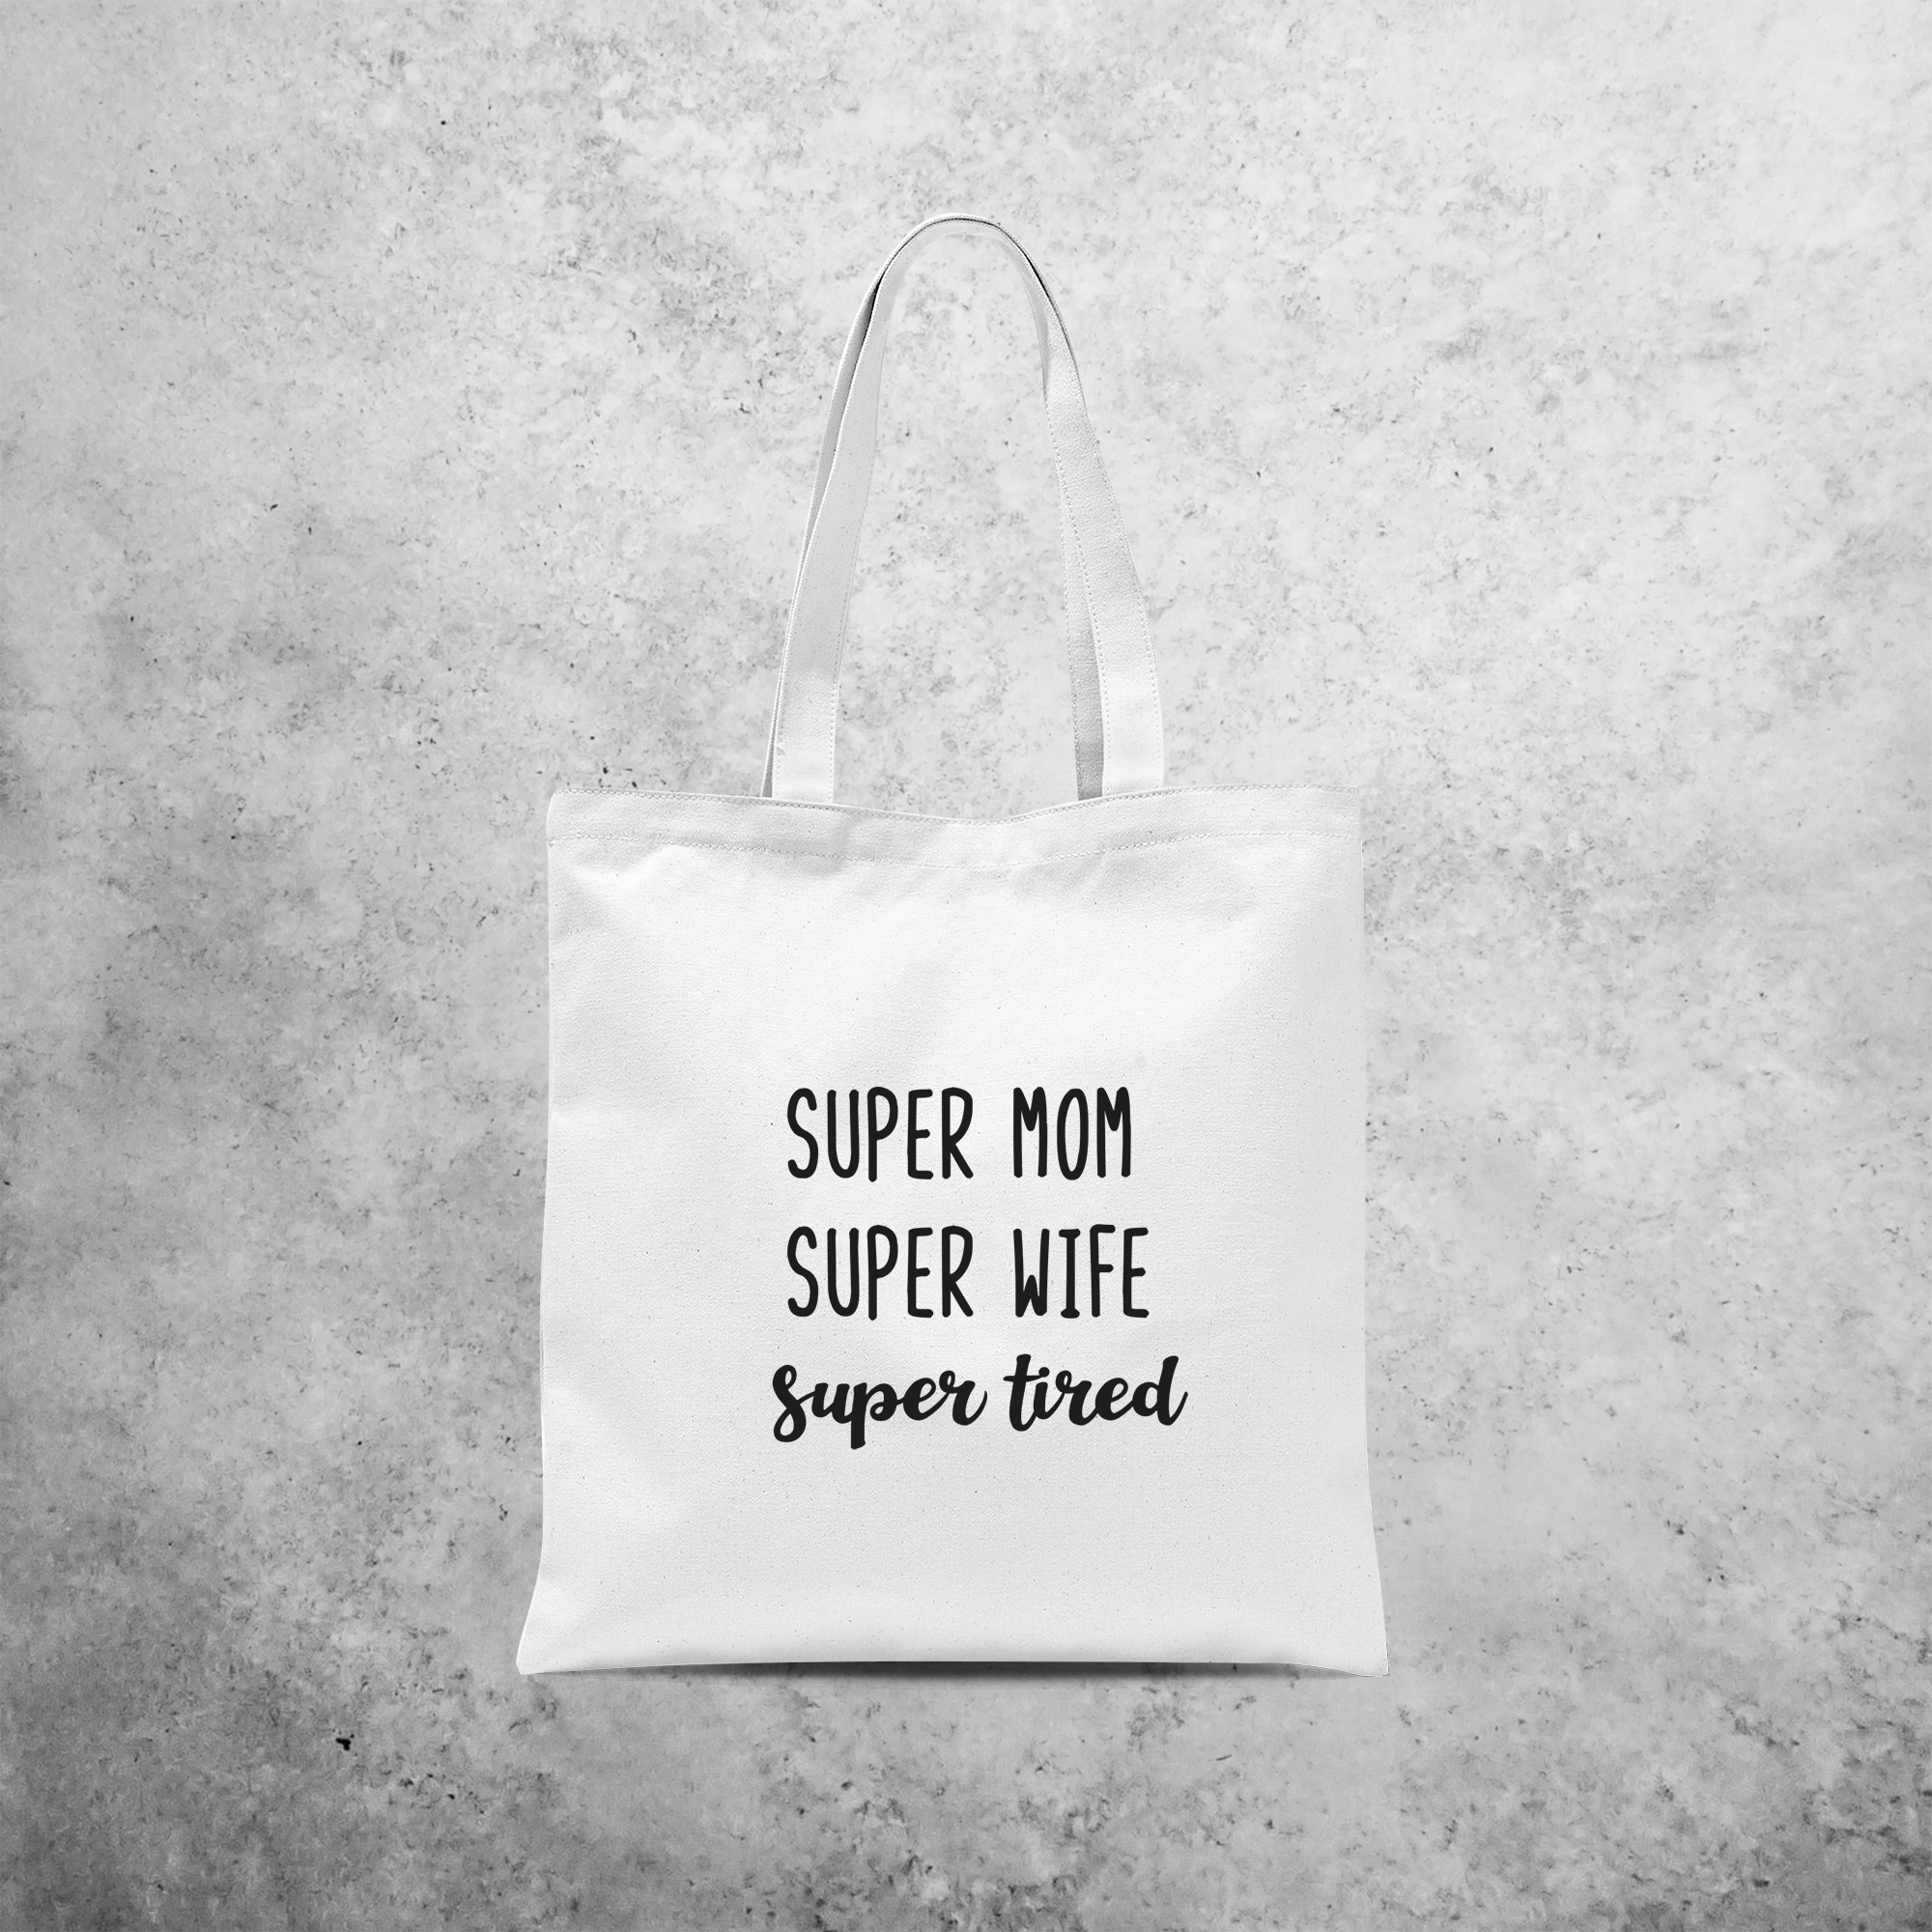 'Super mom, super wife, super tired' tote bag